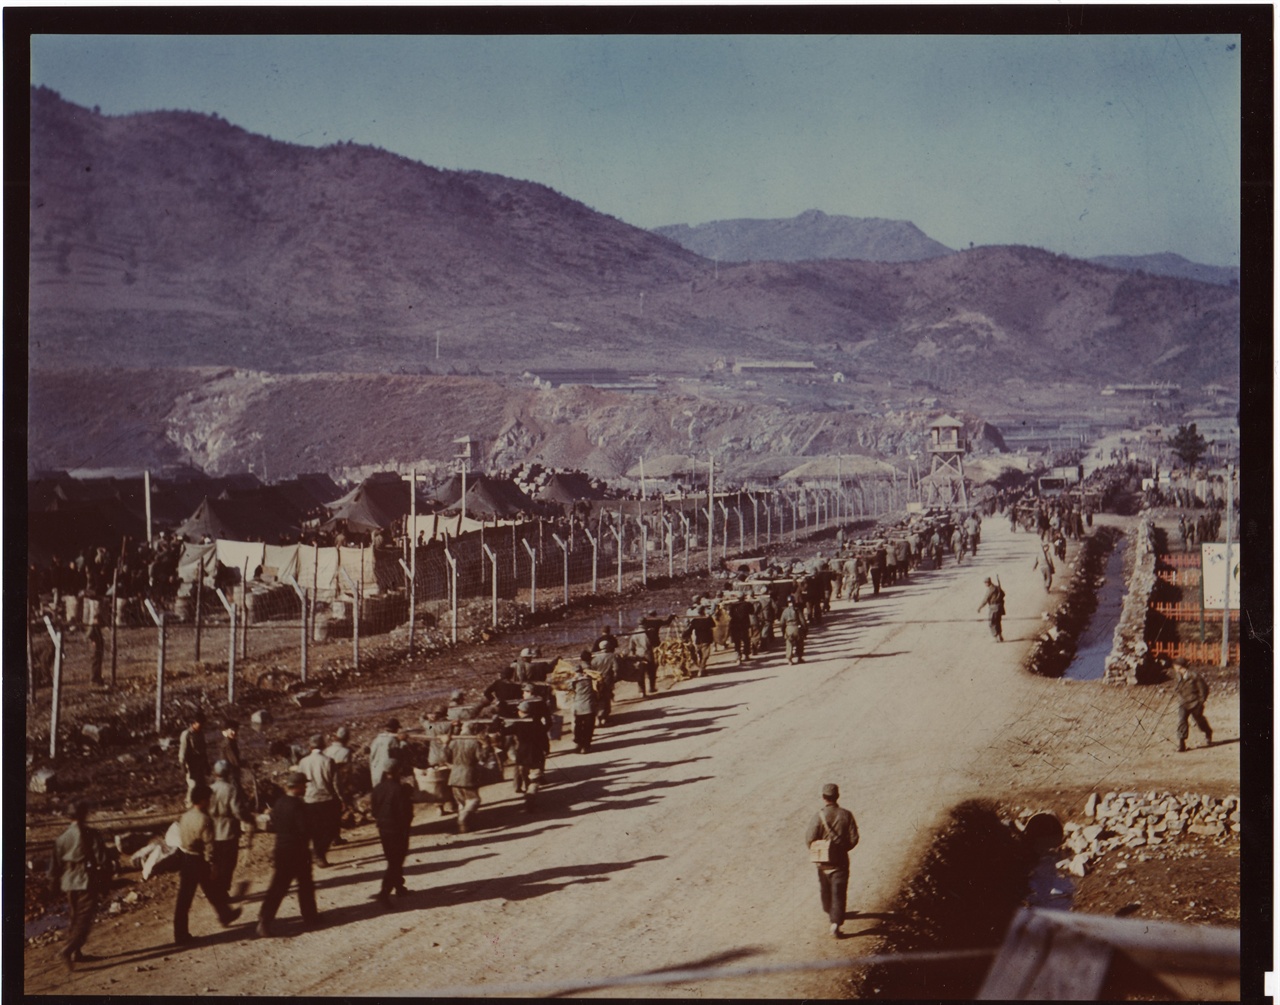  1952. 3. 20. 거제도,  포로들이 청소한 오물을 버리려고 수용소 바깥 쓰레기장으로 가고 있다.